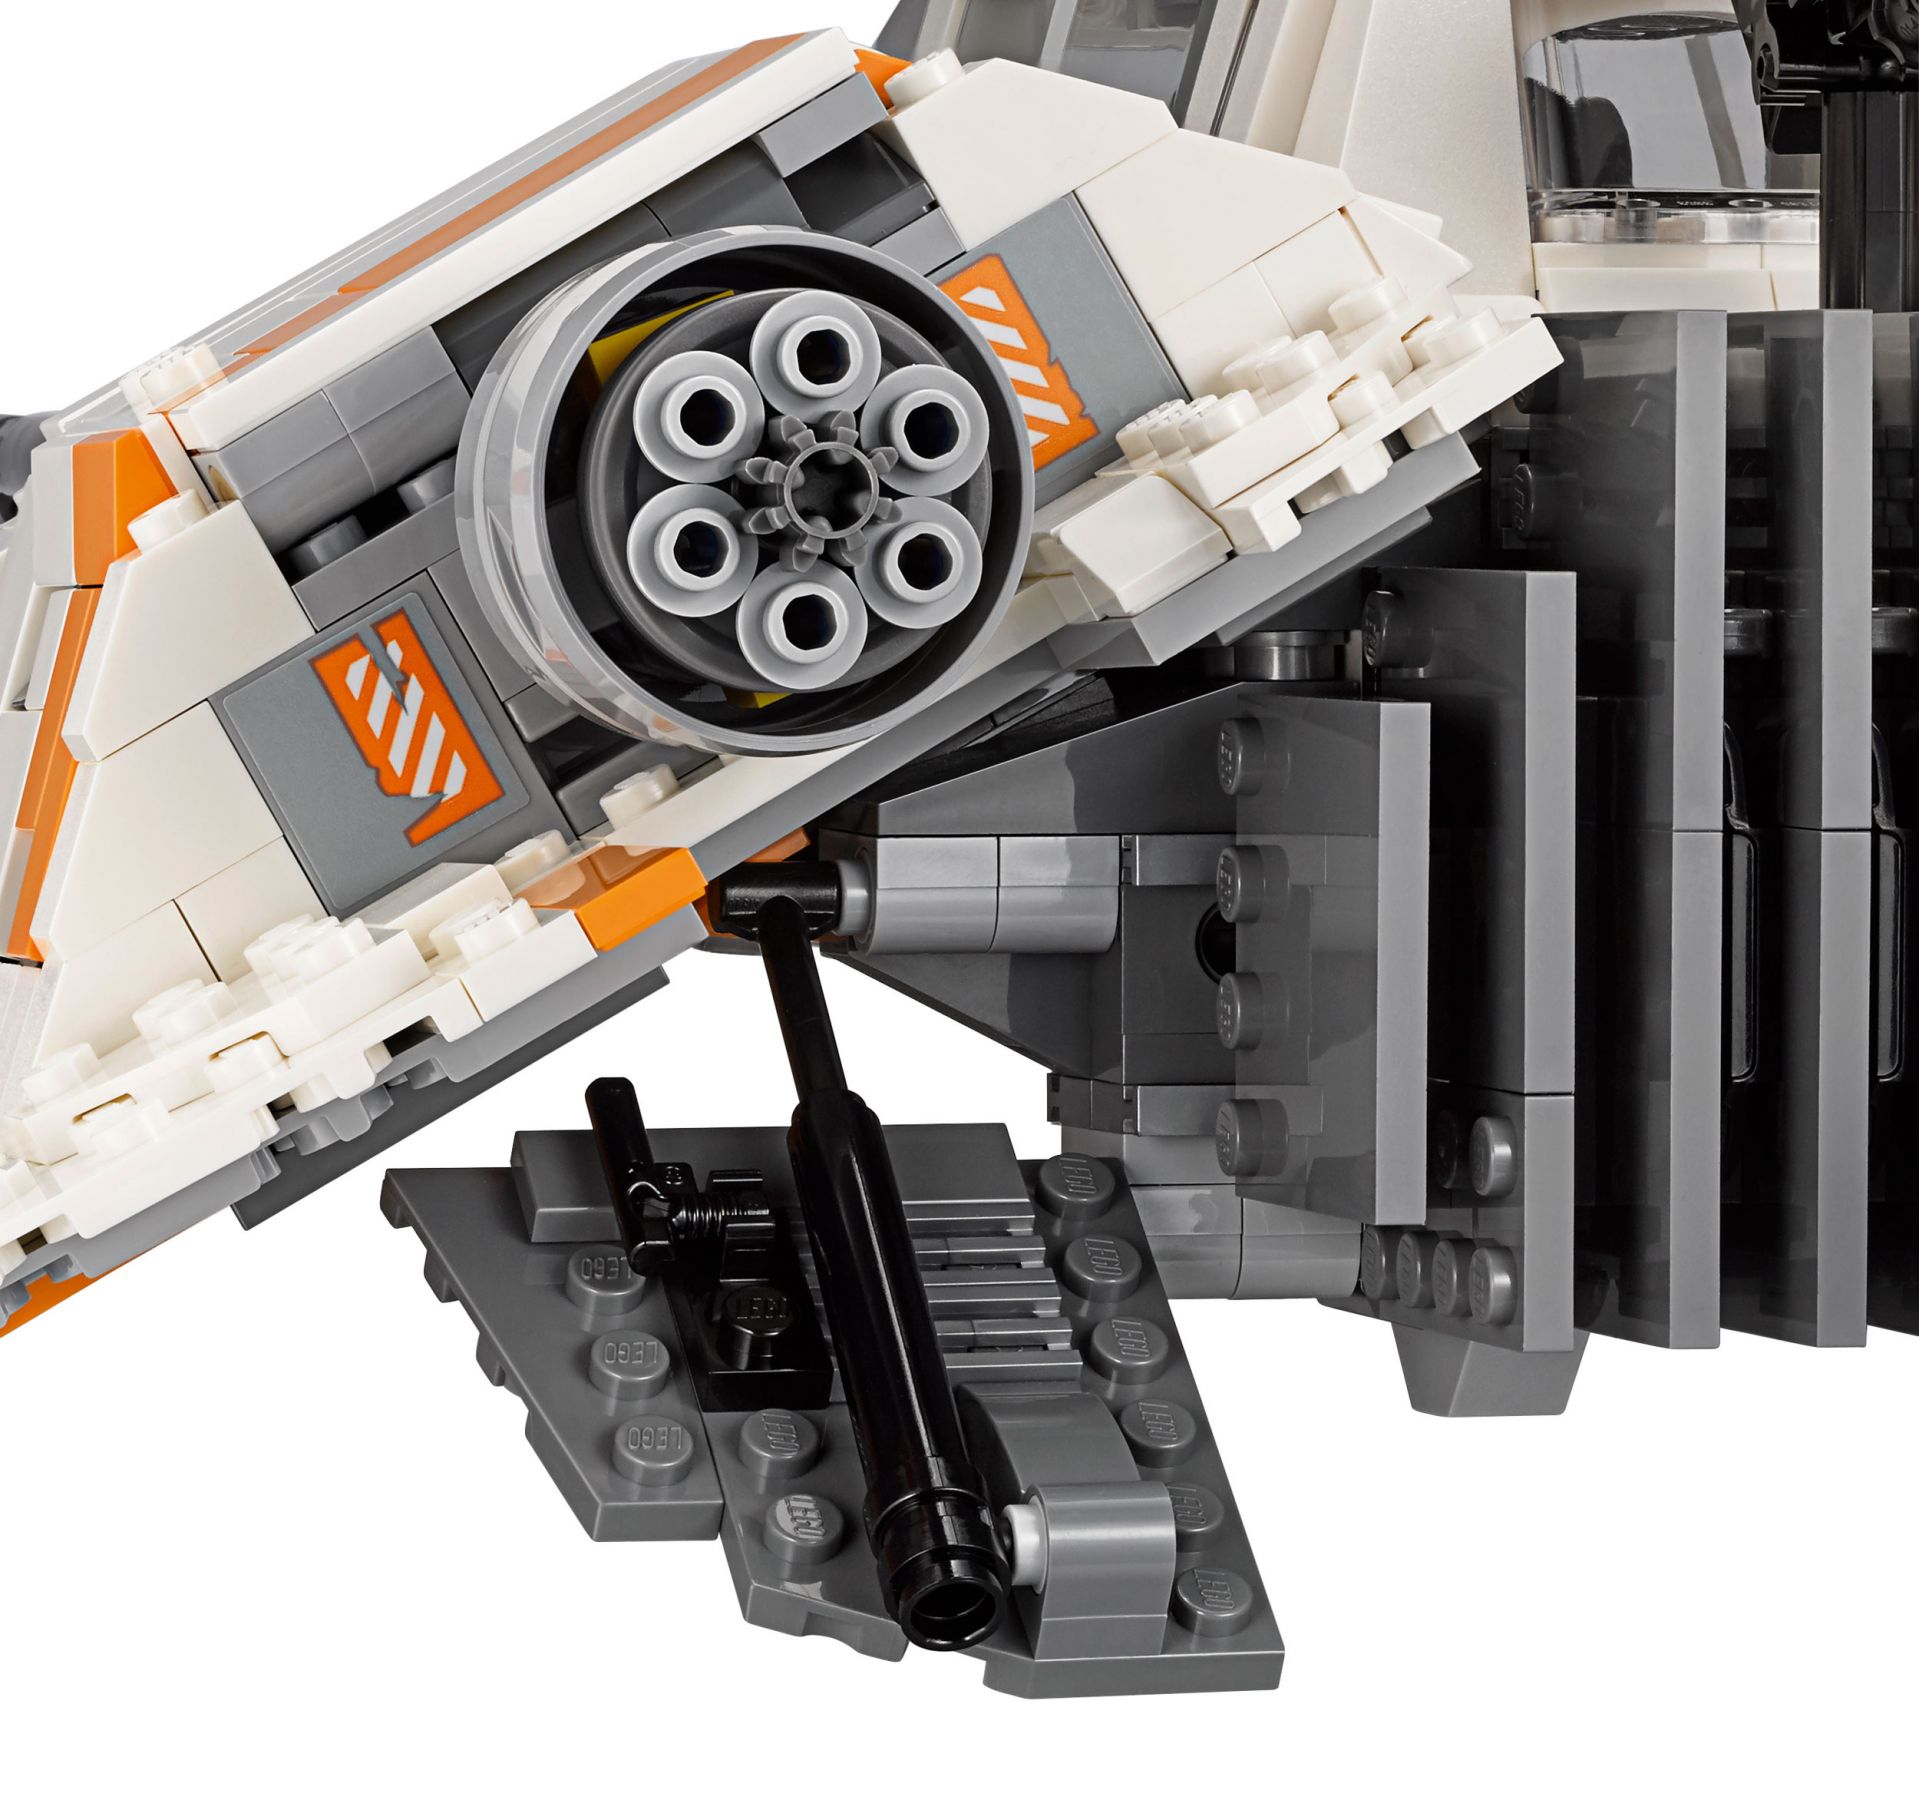 LEGO Star Wars 75144 Snowspeeder™ LEGO_Star_Wars_75144_Snowspeeder_UCS_img11.jpg